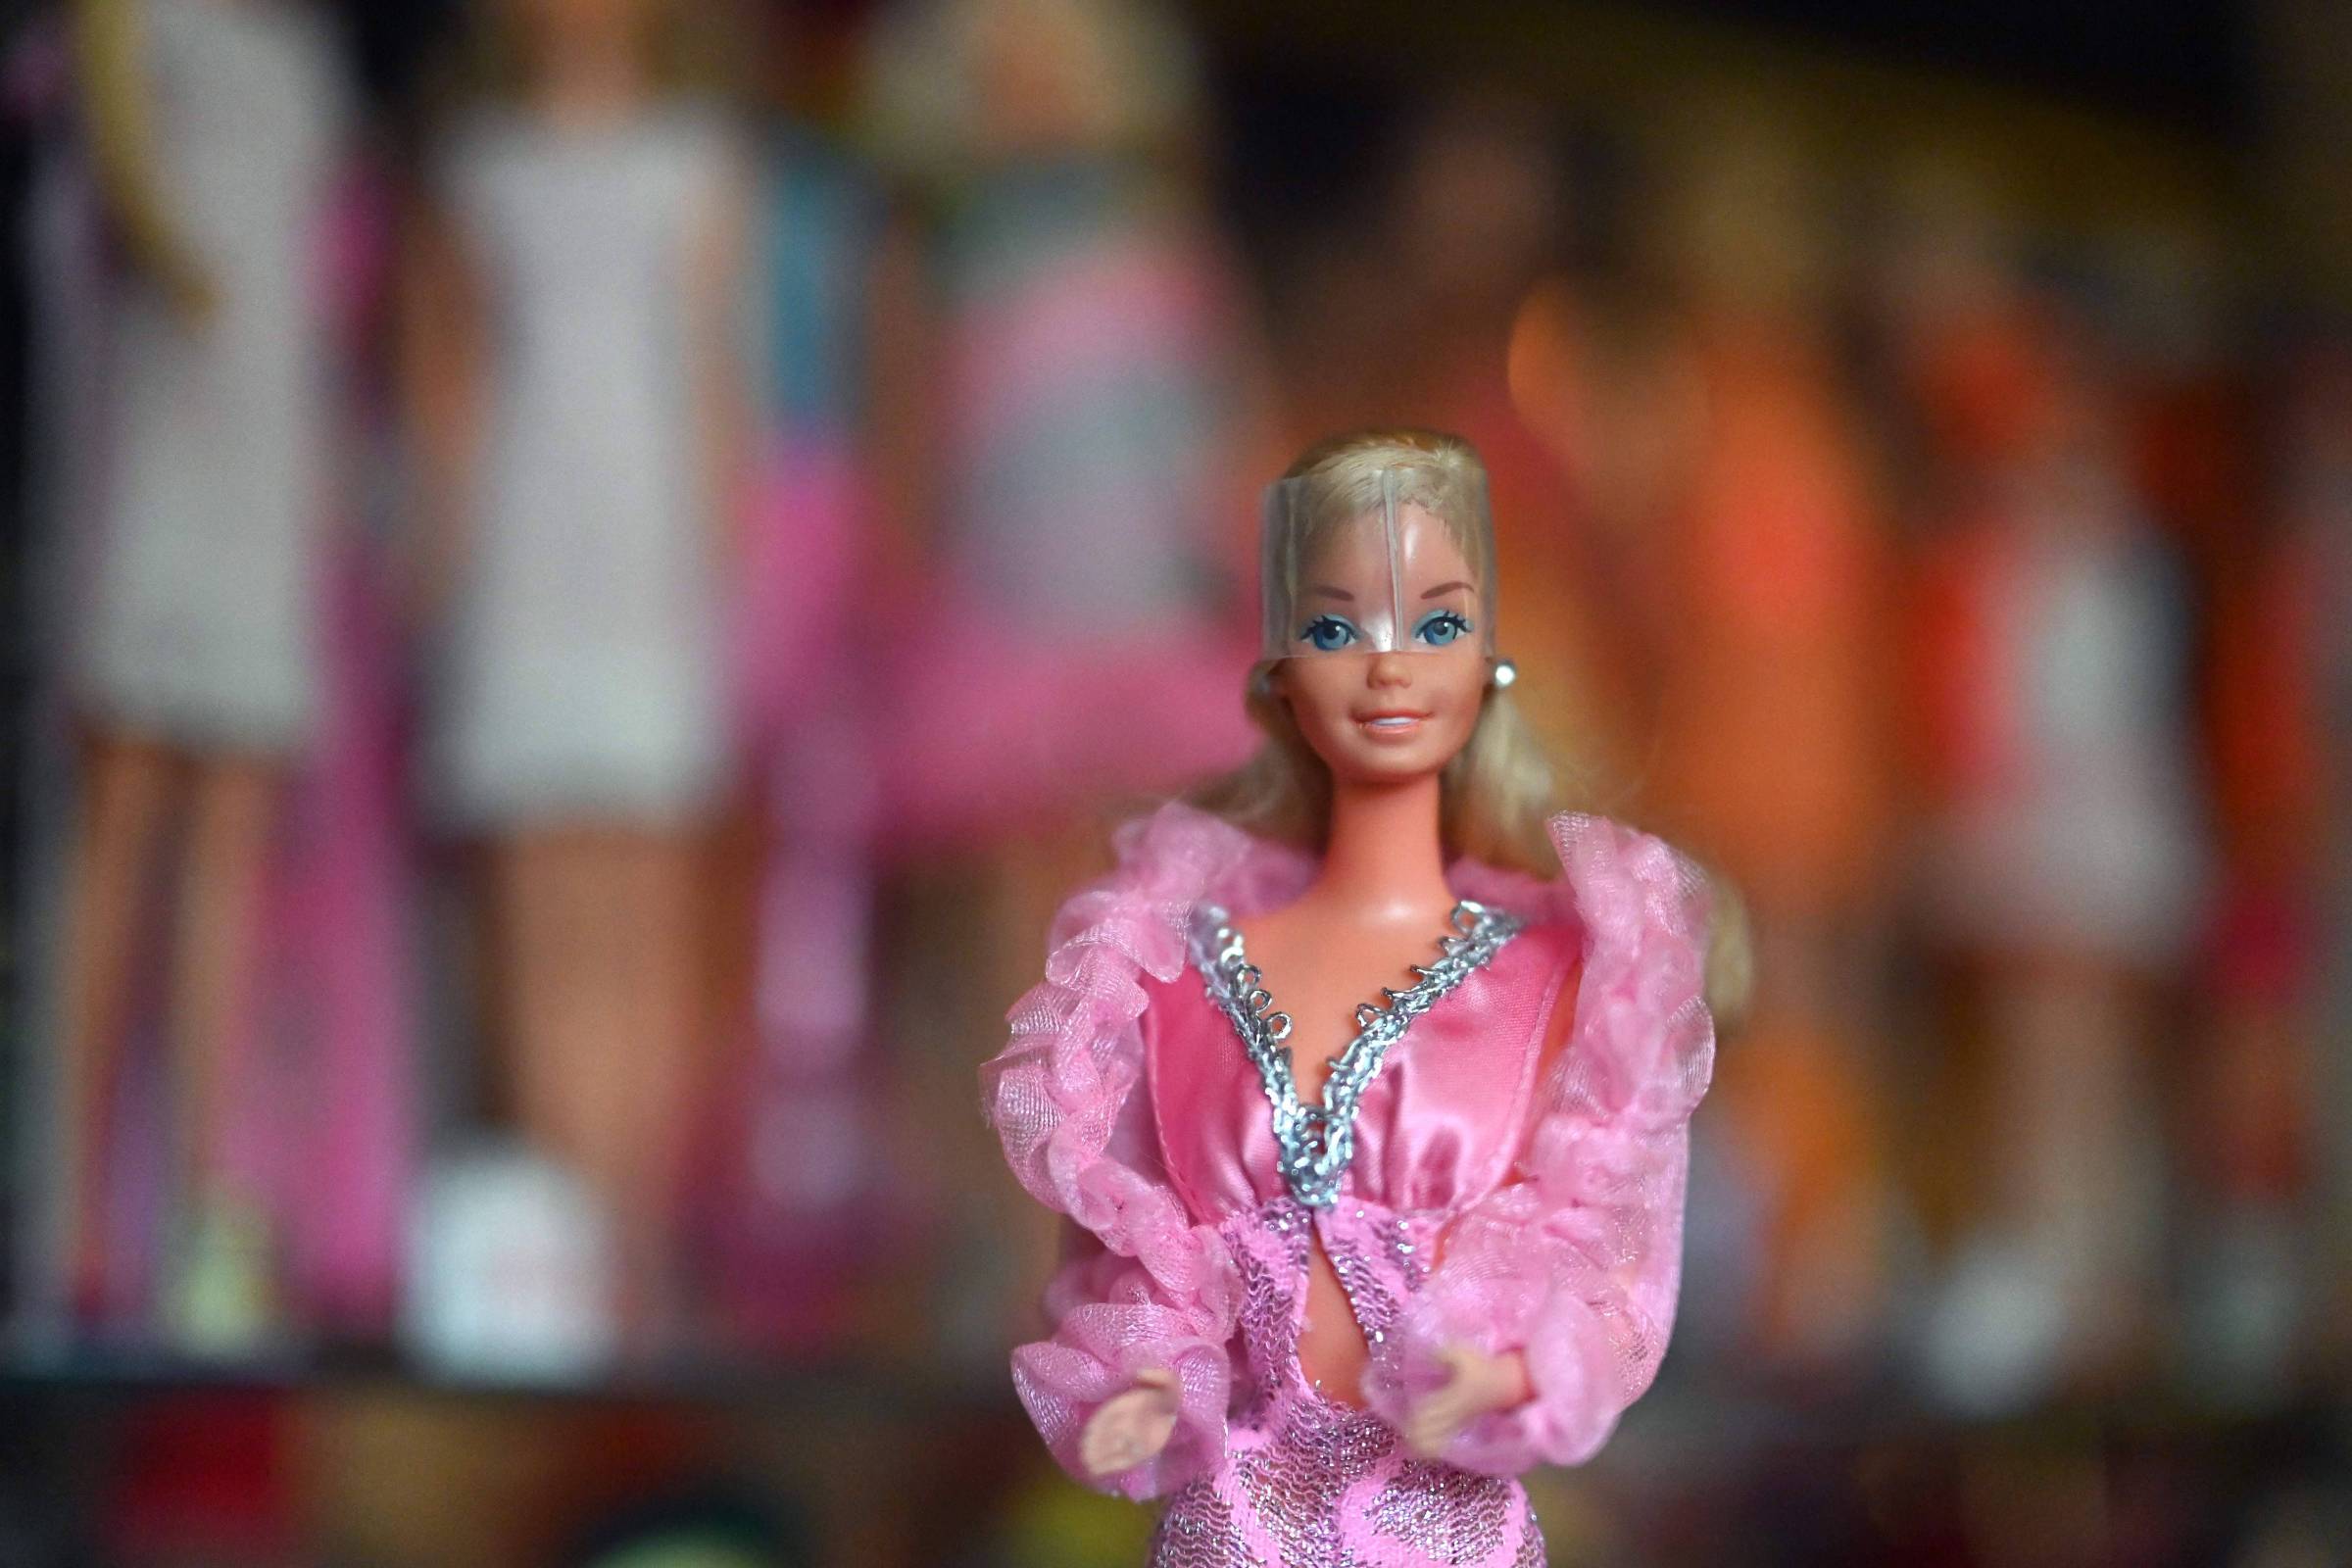 Conjunto de roupas Barbie – Planeta das Vendas